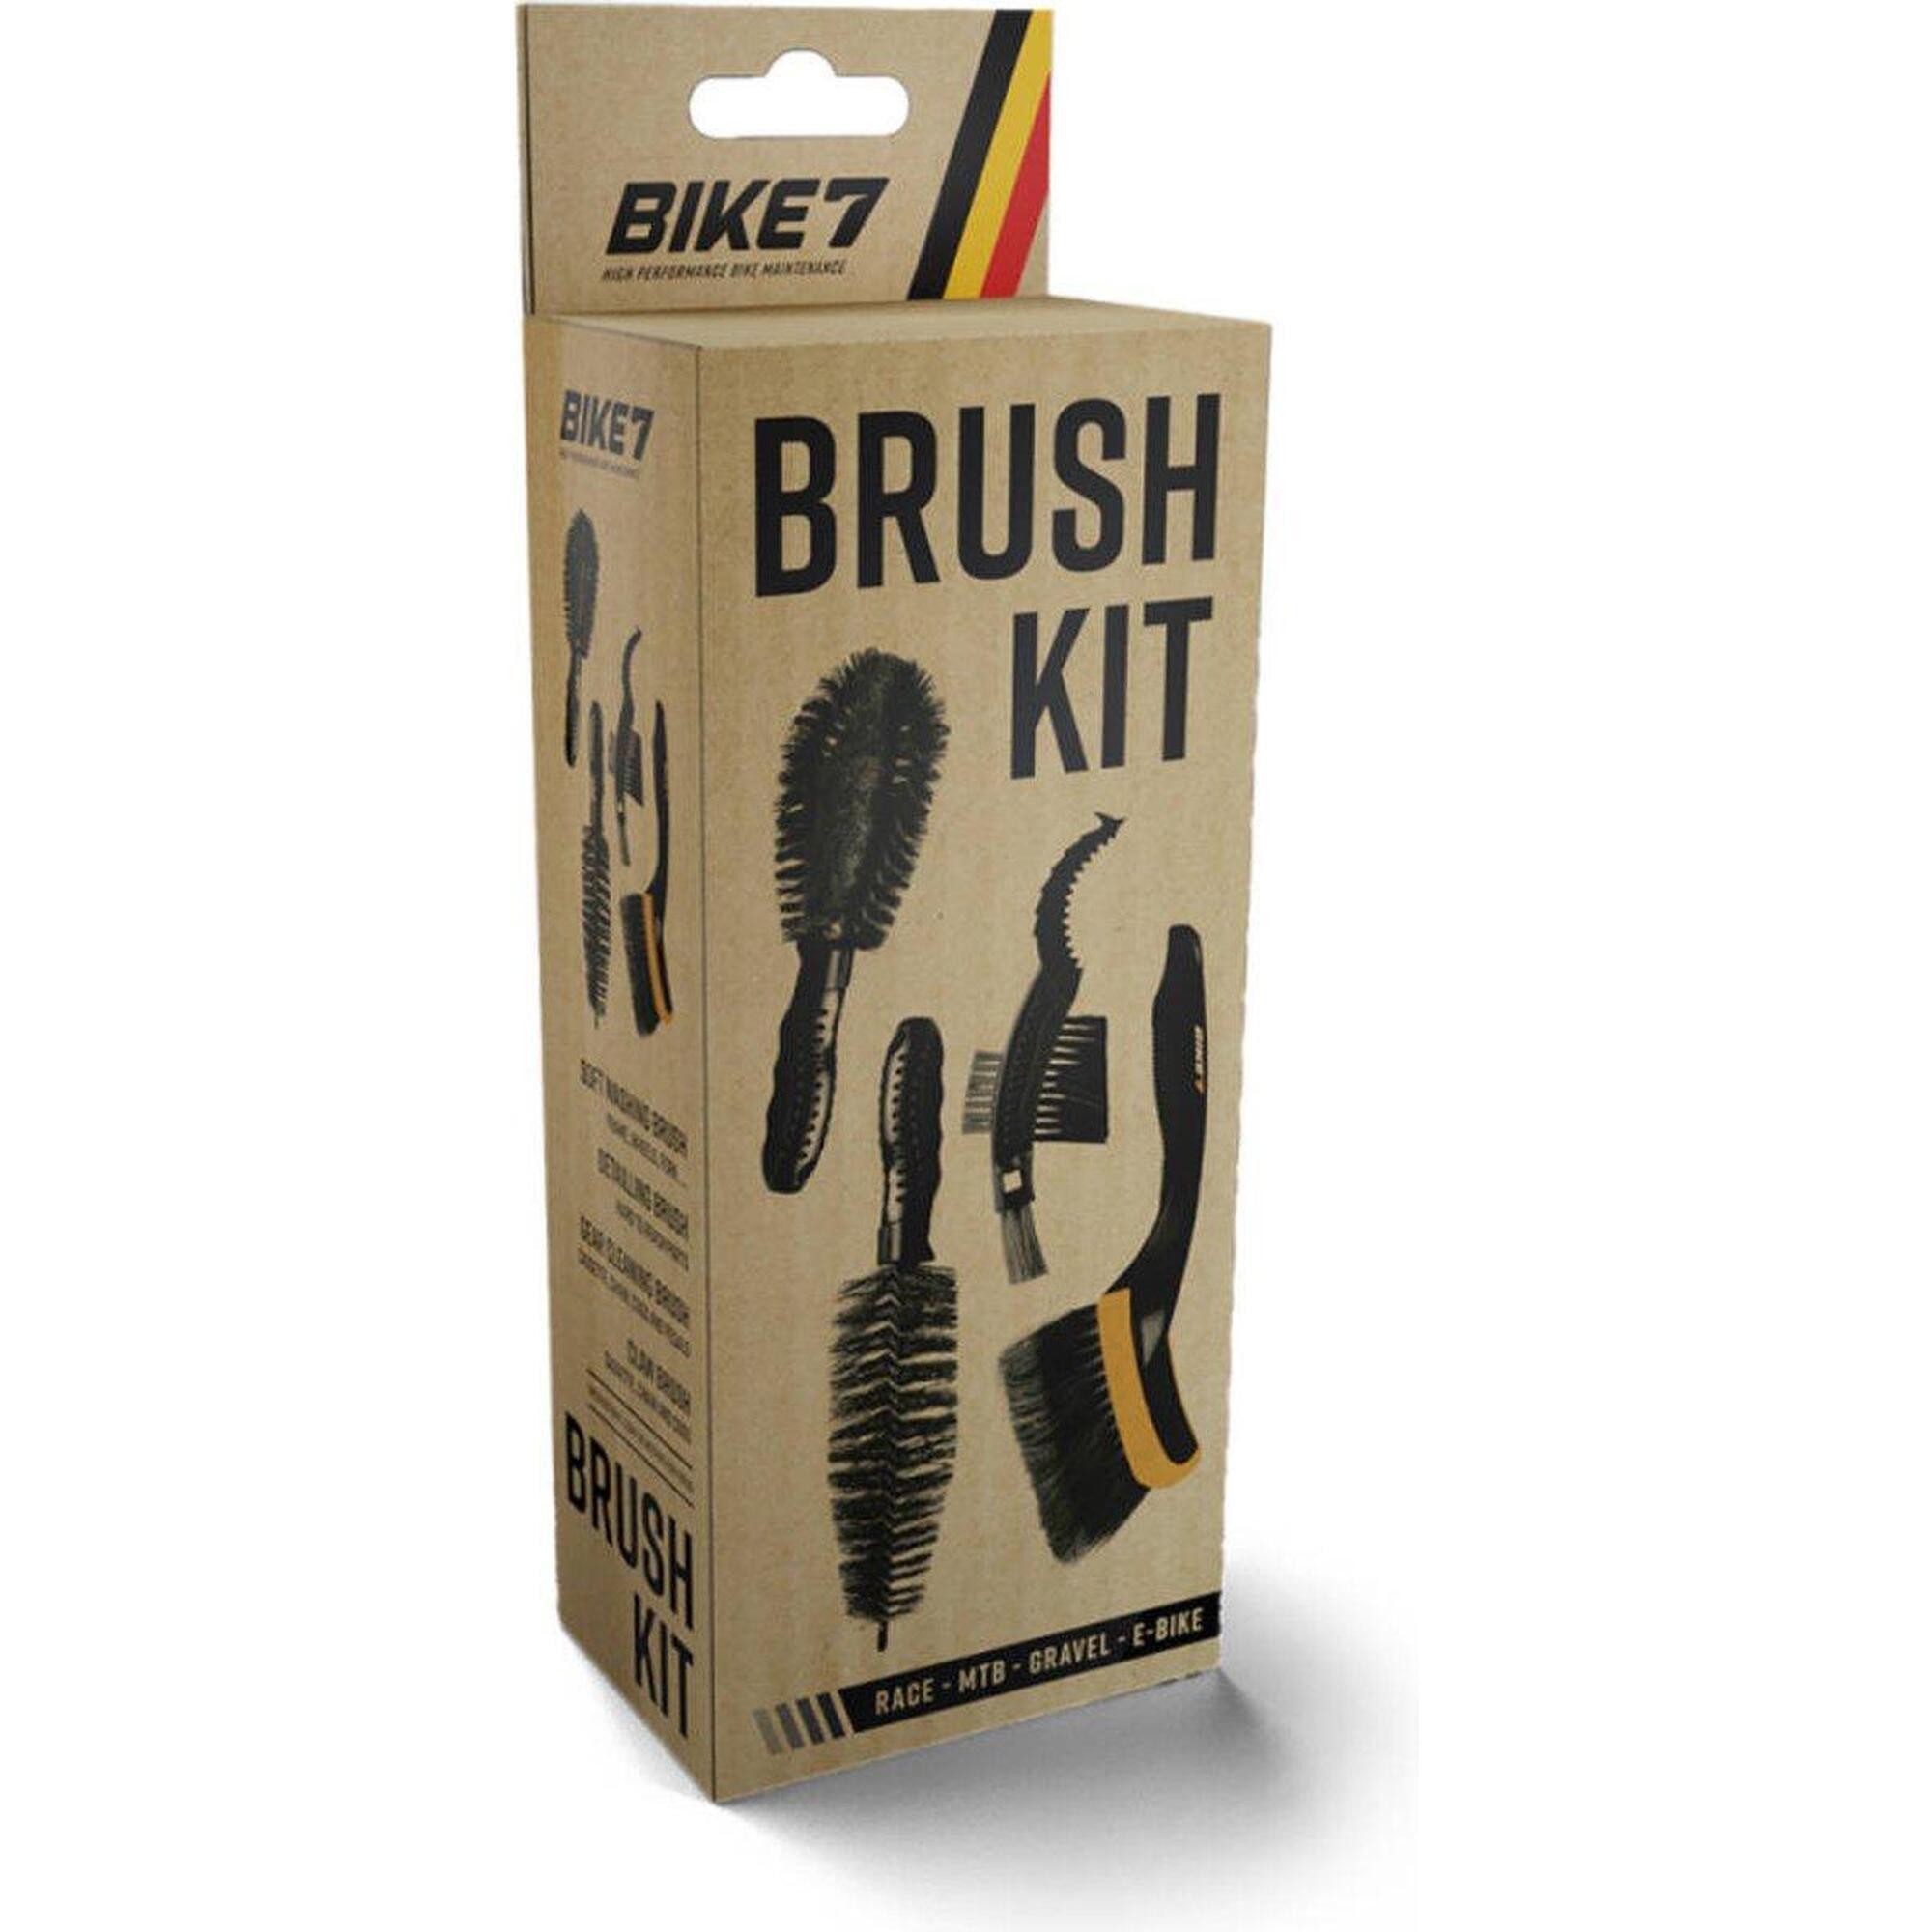 Fahrradzubehör Tiefenreinigung für alle Arten - Bike7 Brush Kit 4 Artikel